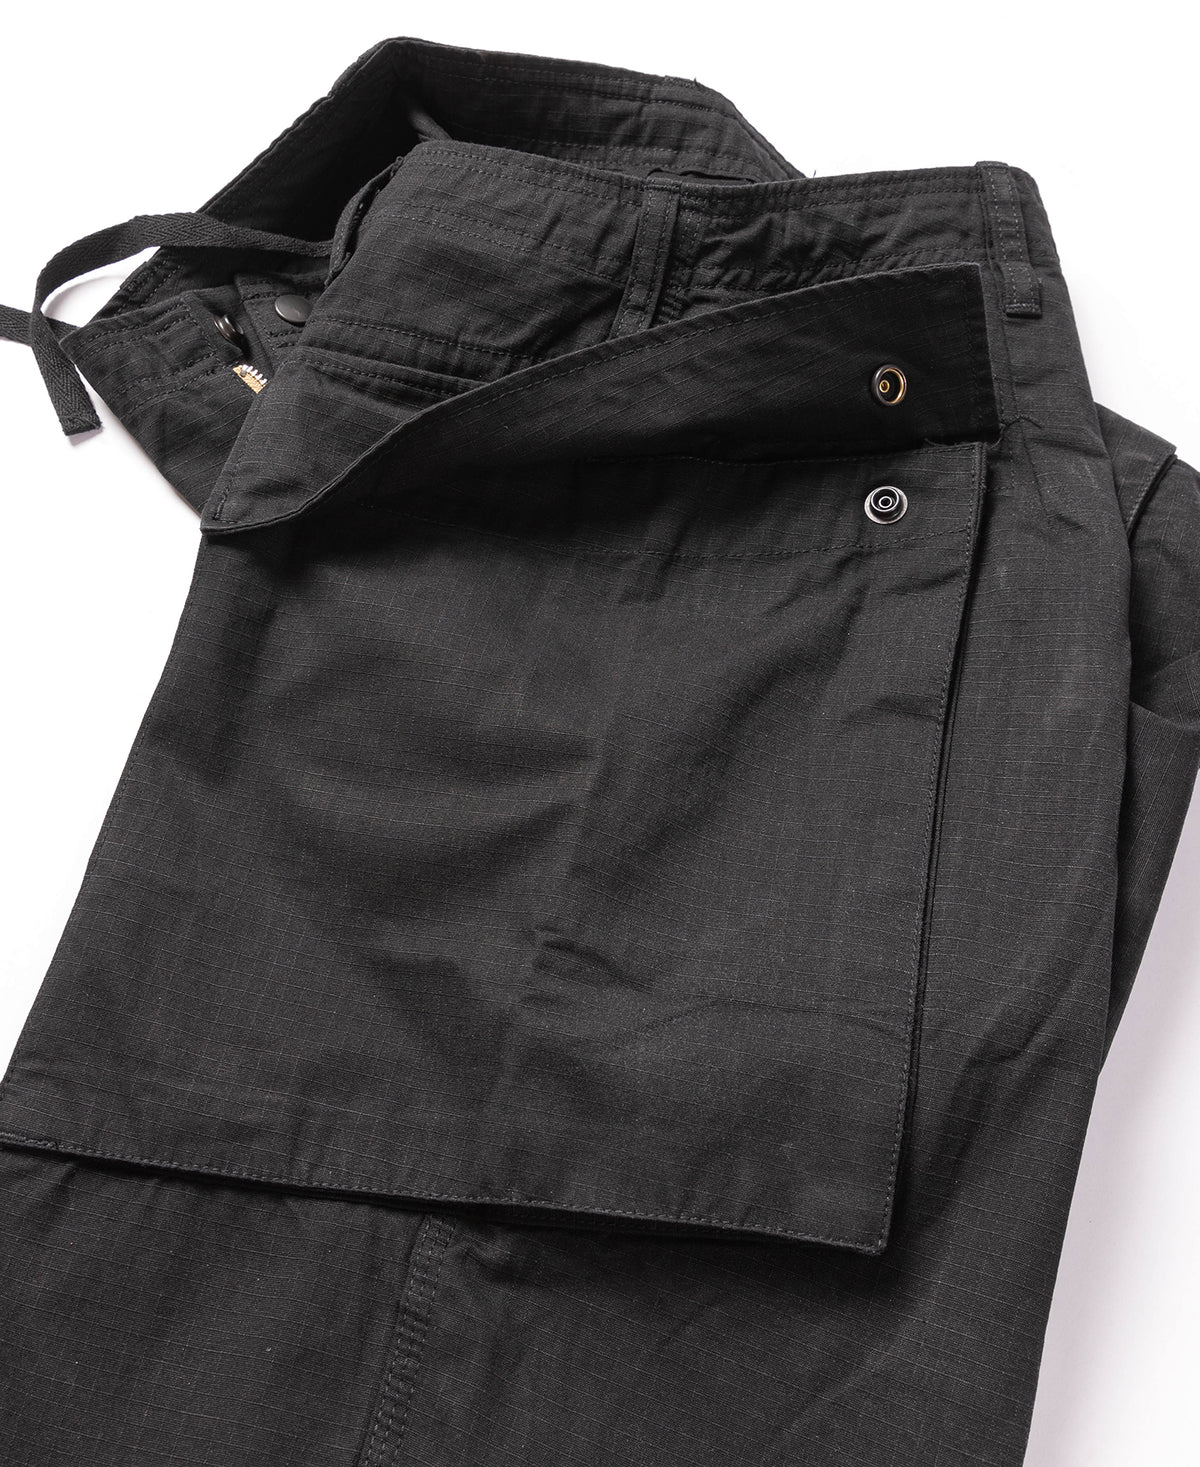 8.5 oz Cotton Ripstop Cargo Shorts - Black